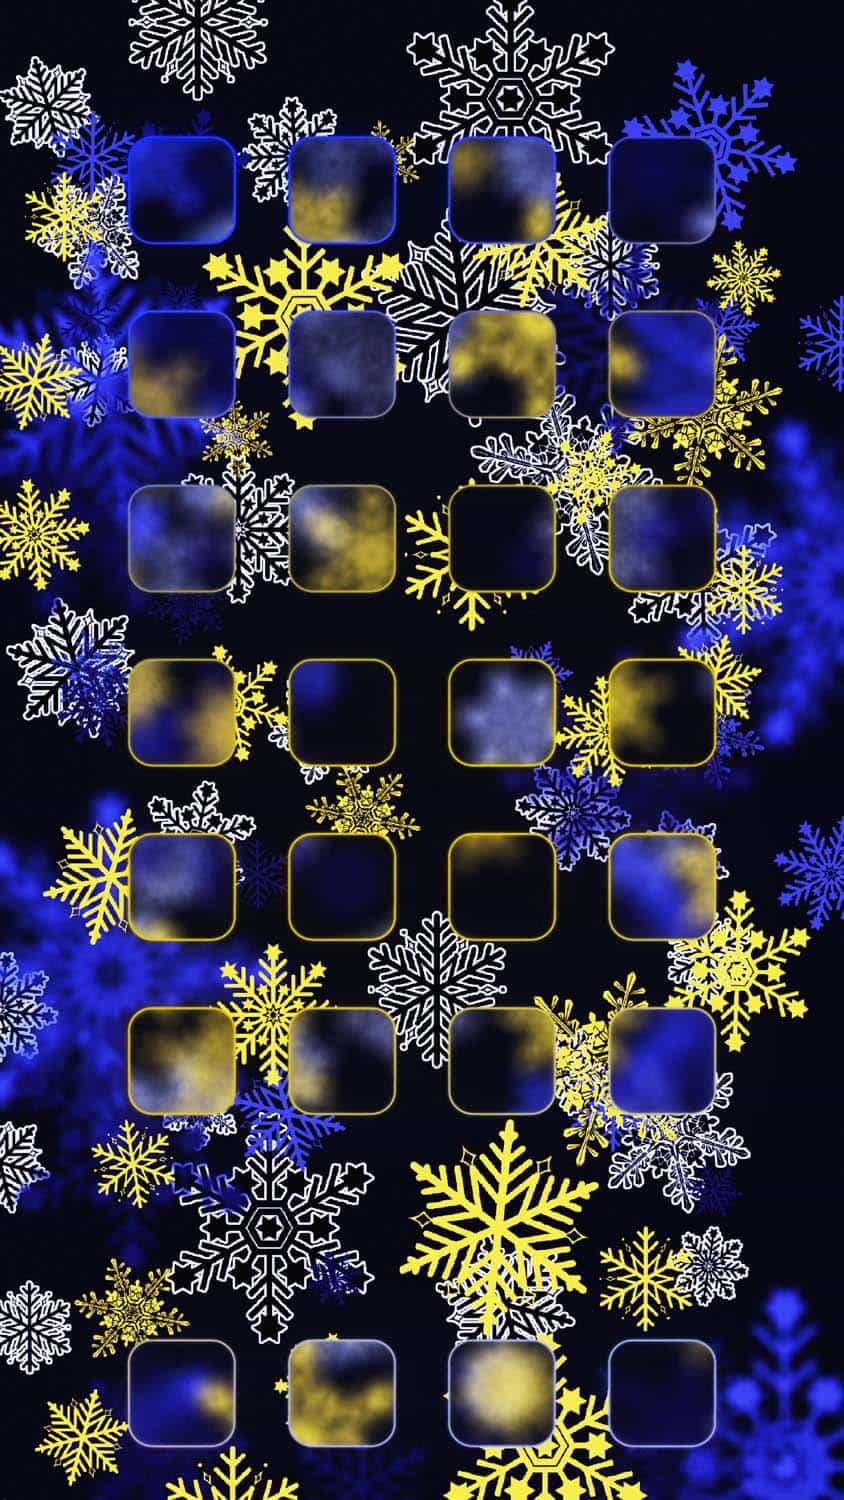 Winter iOS App Dock Background Wallpaper